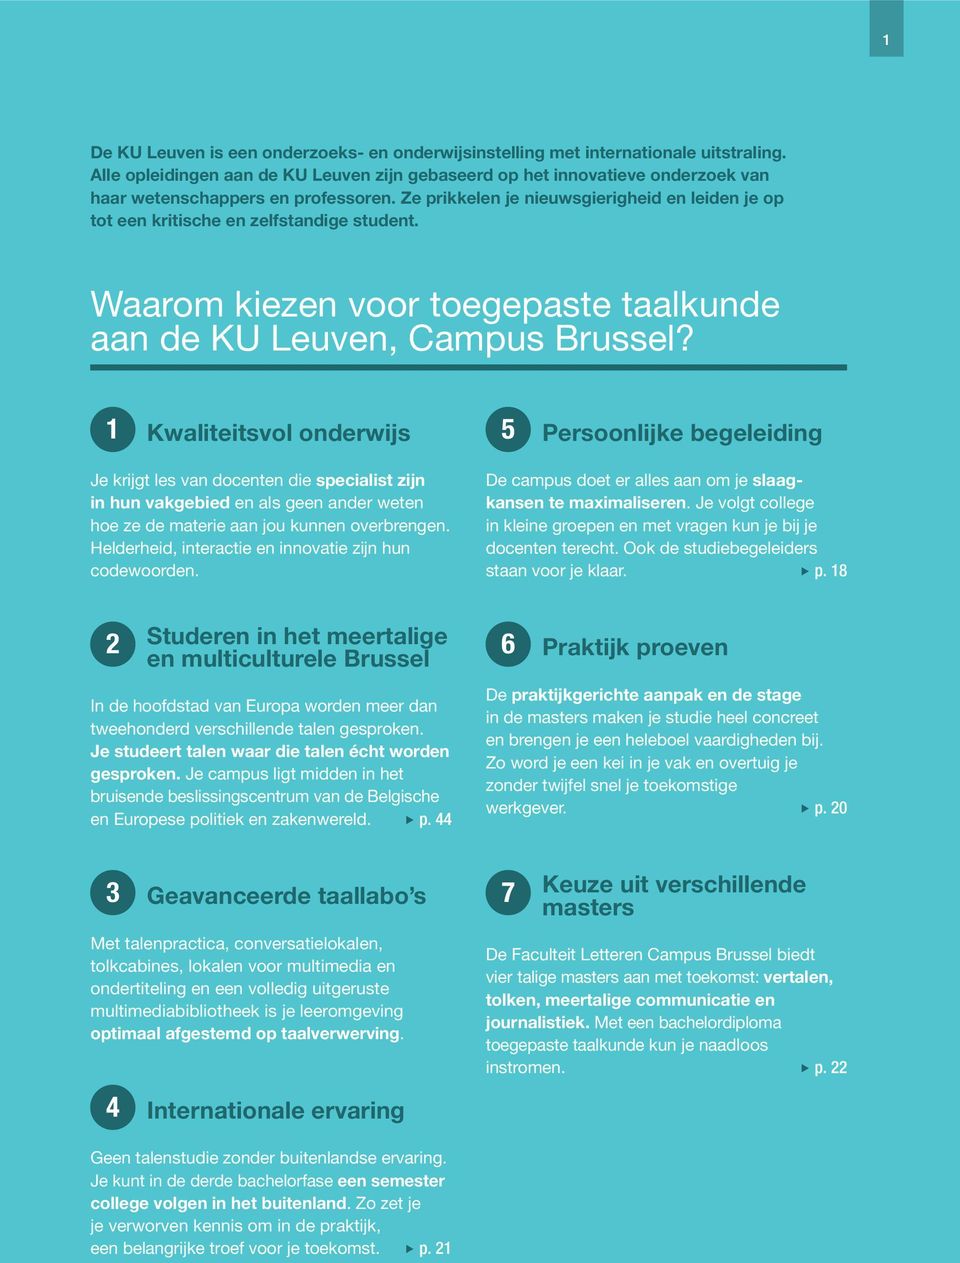 Ze prikkelen je nieuwsgierigheid en leiden je op tot een kritische en zelfstandige student. Waarom kiezen voor toegepaste taalkunde aan de KU Leuven, Campus Brussel?